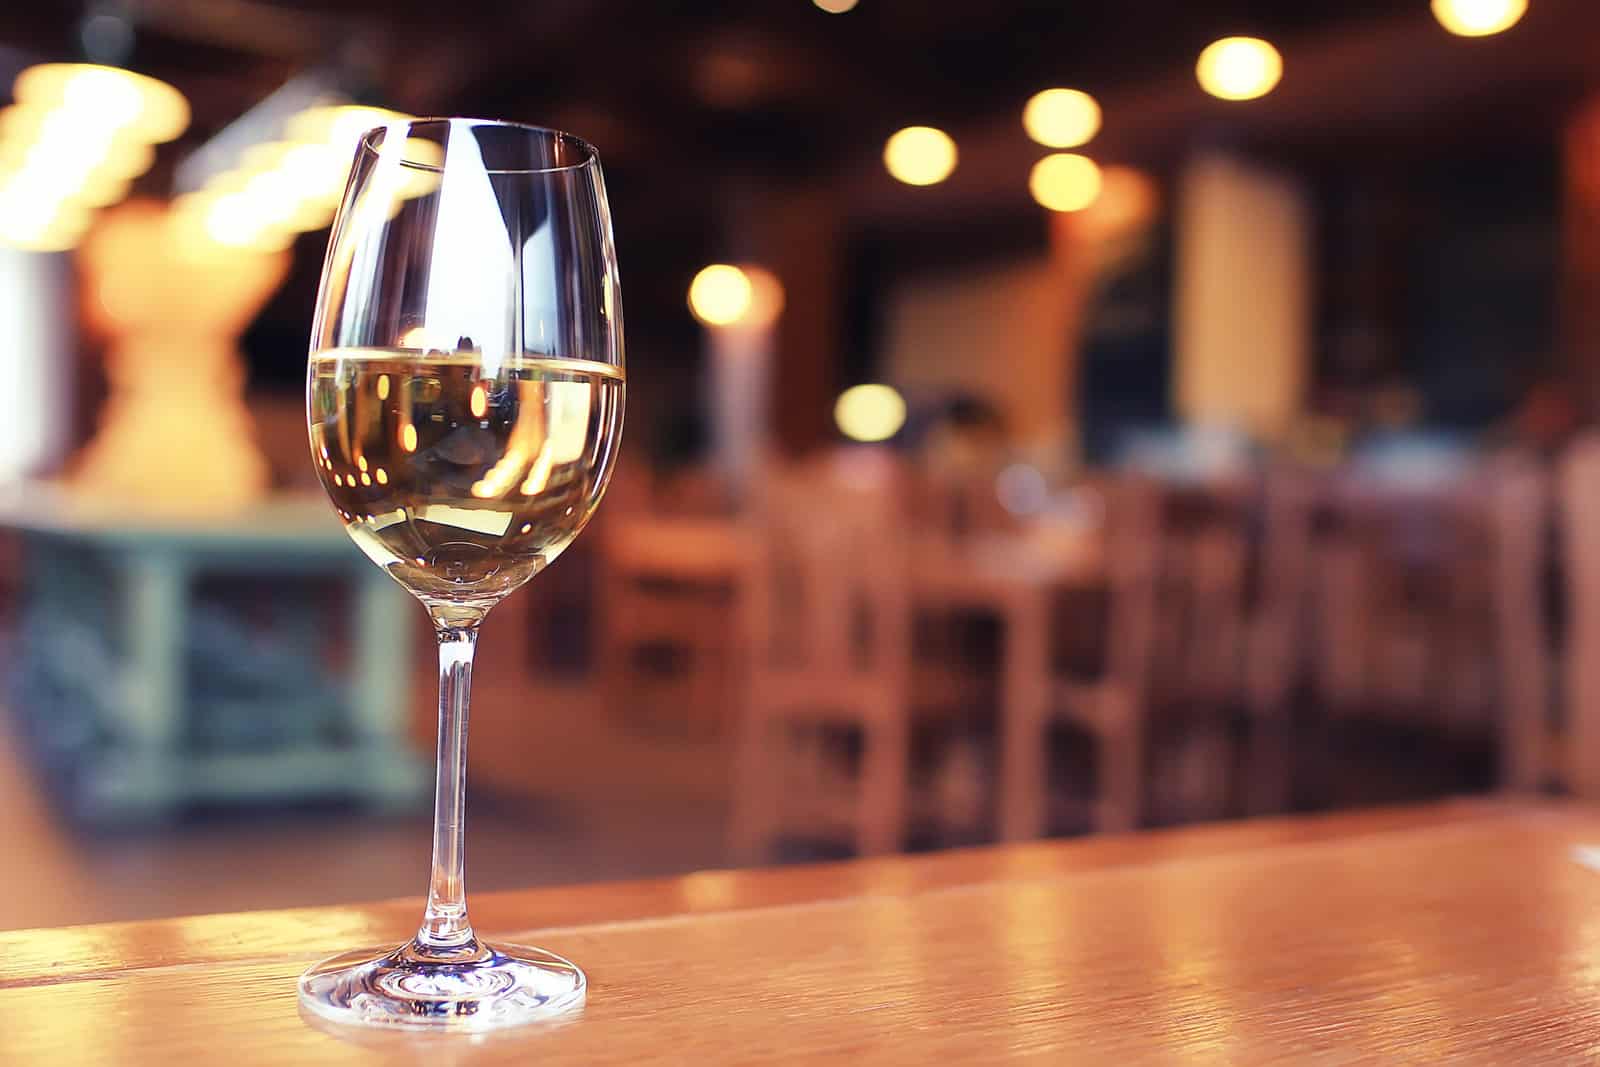 Schönes Leben Speicherstadt Weinglas